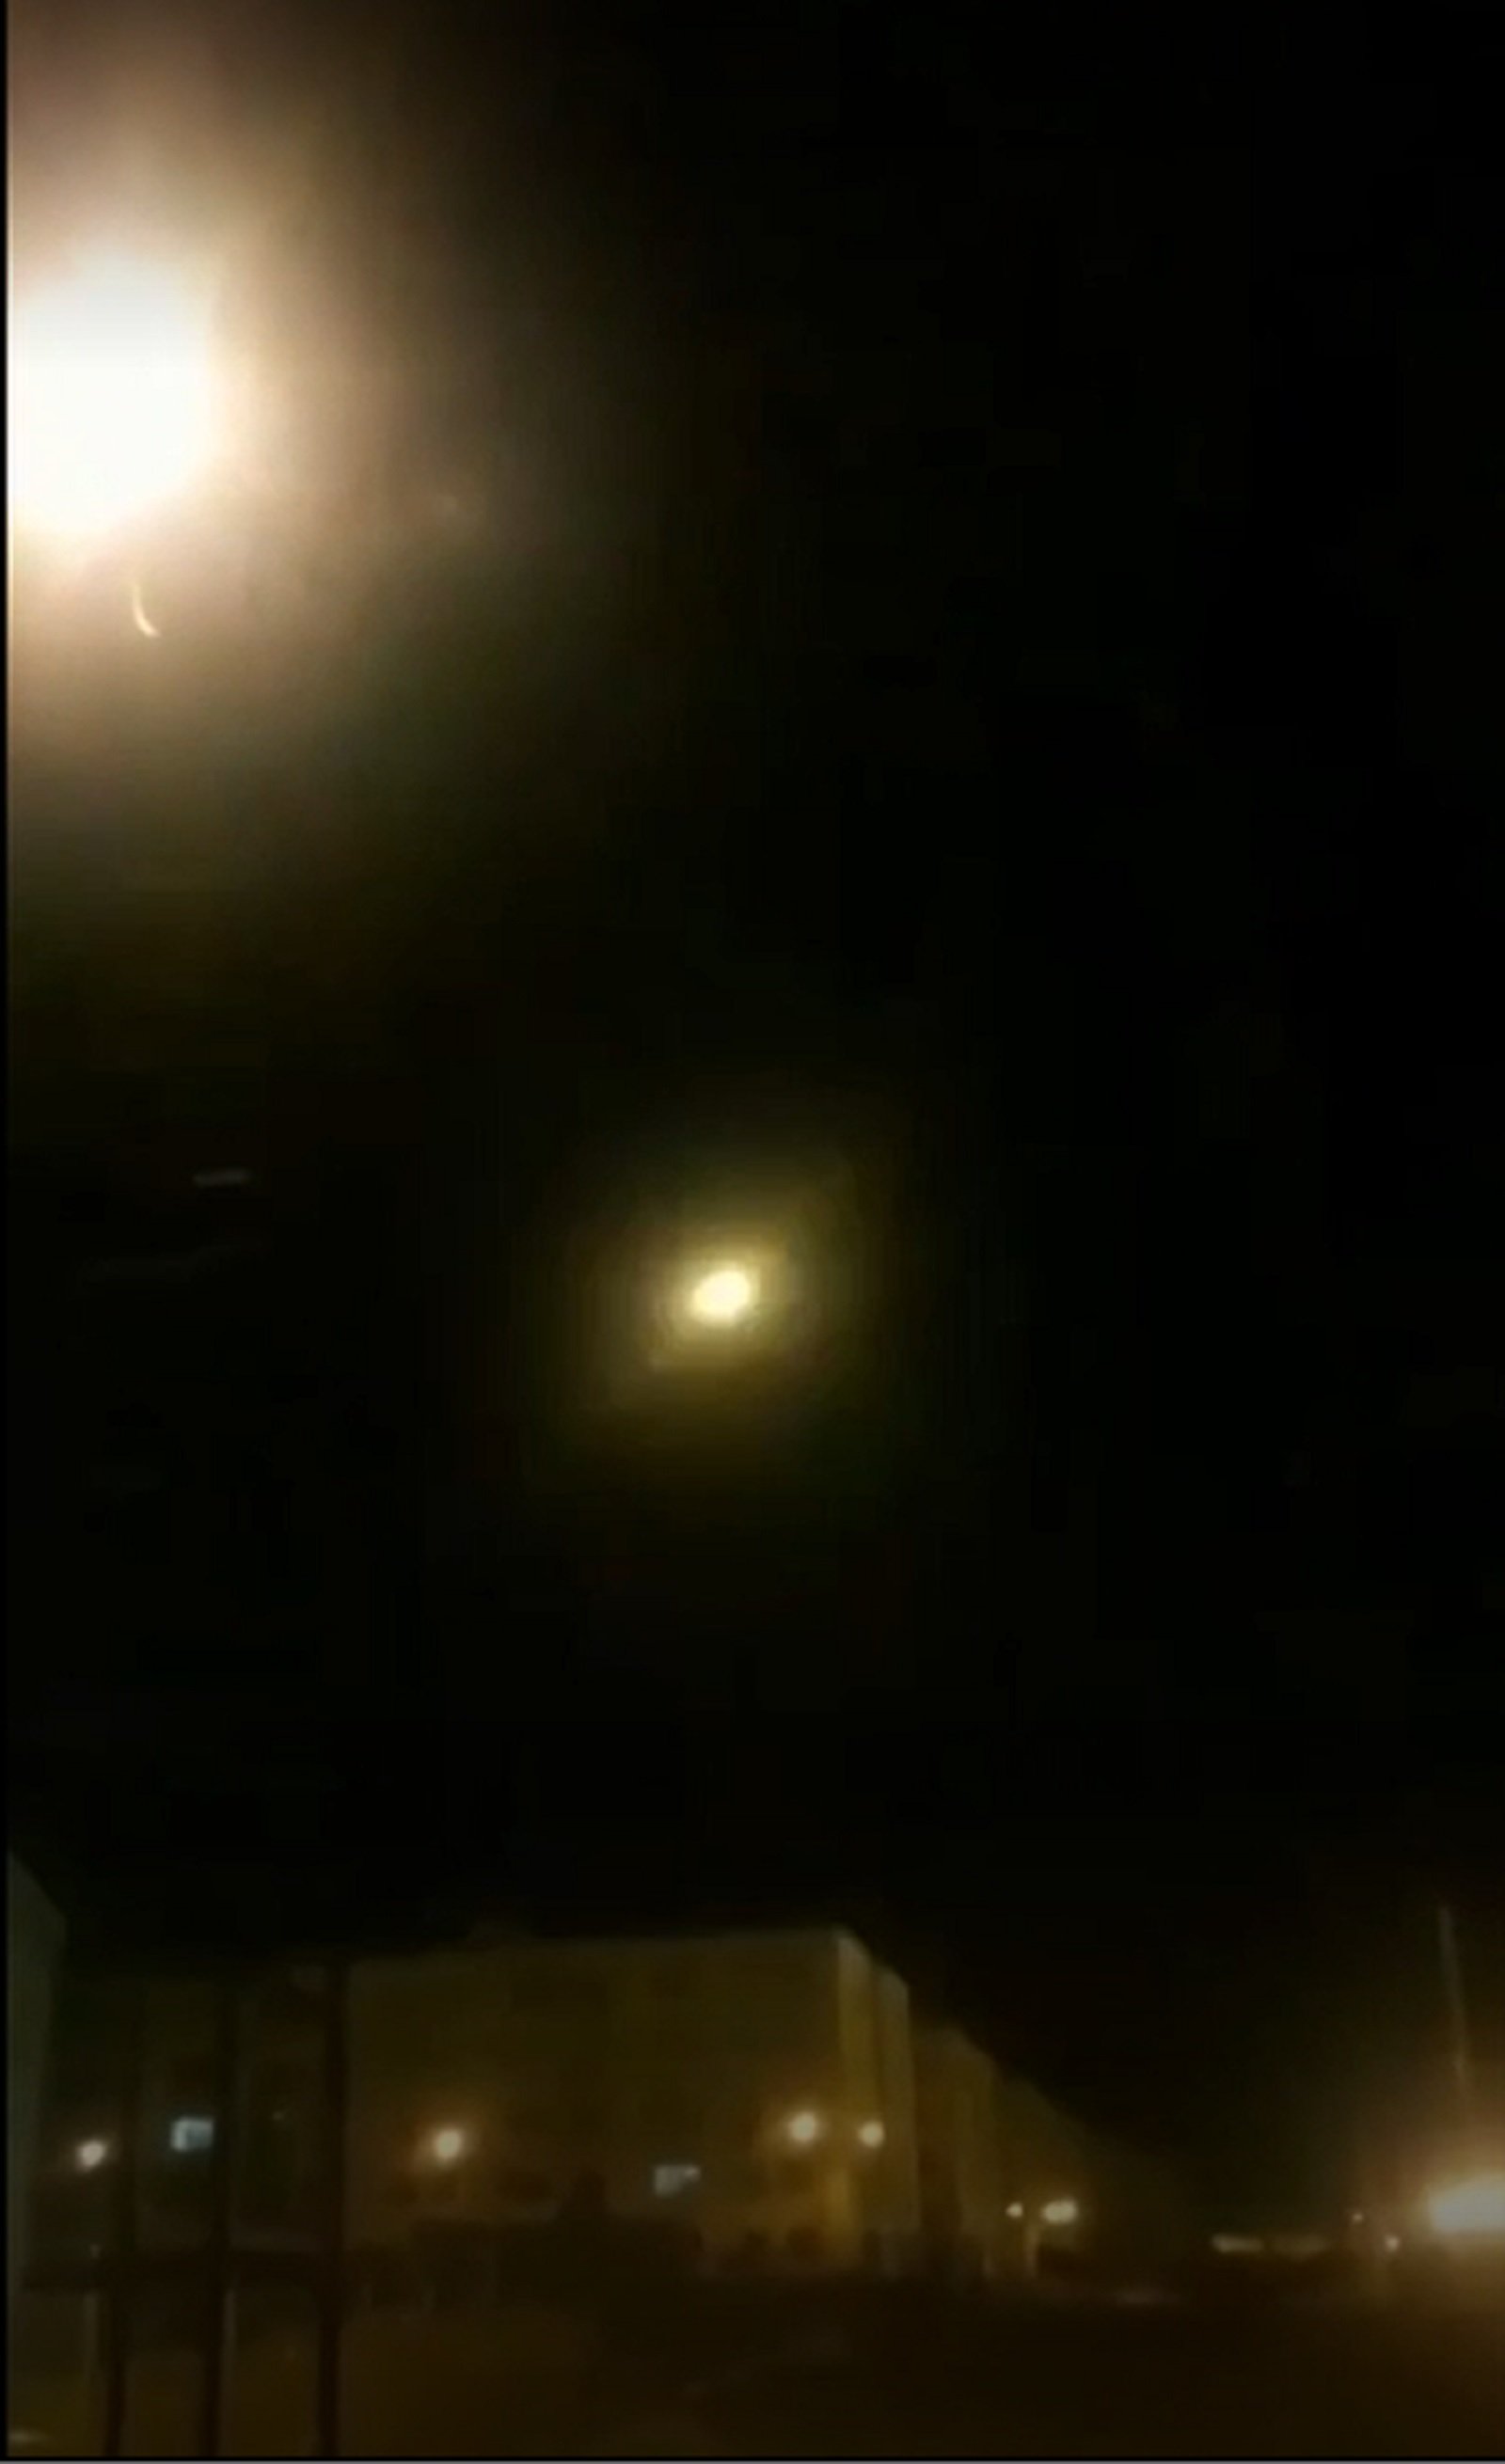 Un vídeo mostra el suposat impacte d'un míssil a l'avió sinistrat a l'Iran